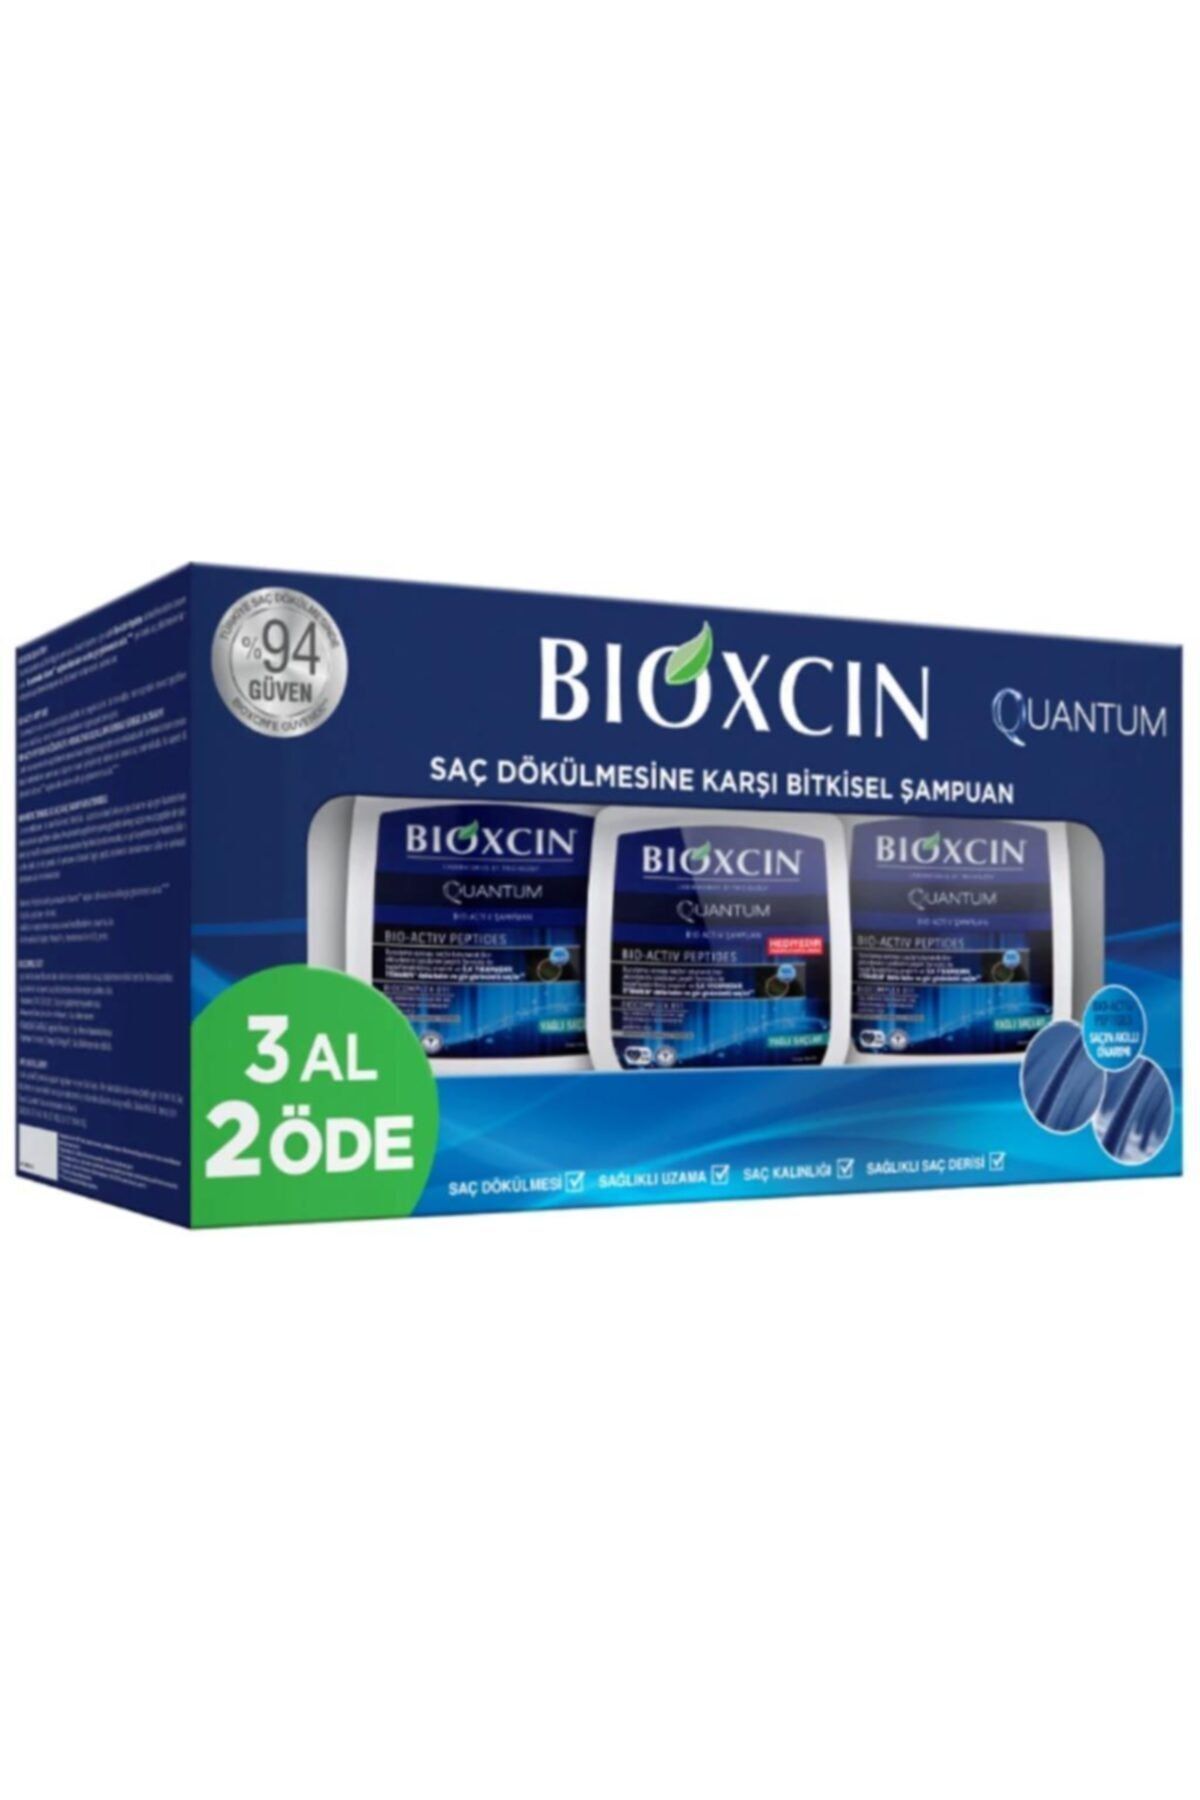 Bioxcin Quantum Yağlı Saçlara Özel Şampuan 300ml | 3 Al 2 Öde